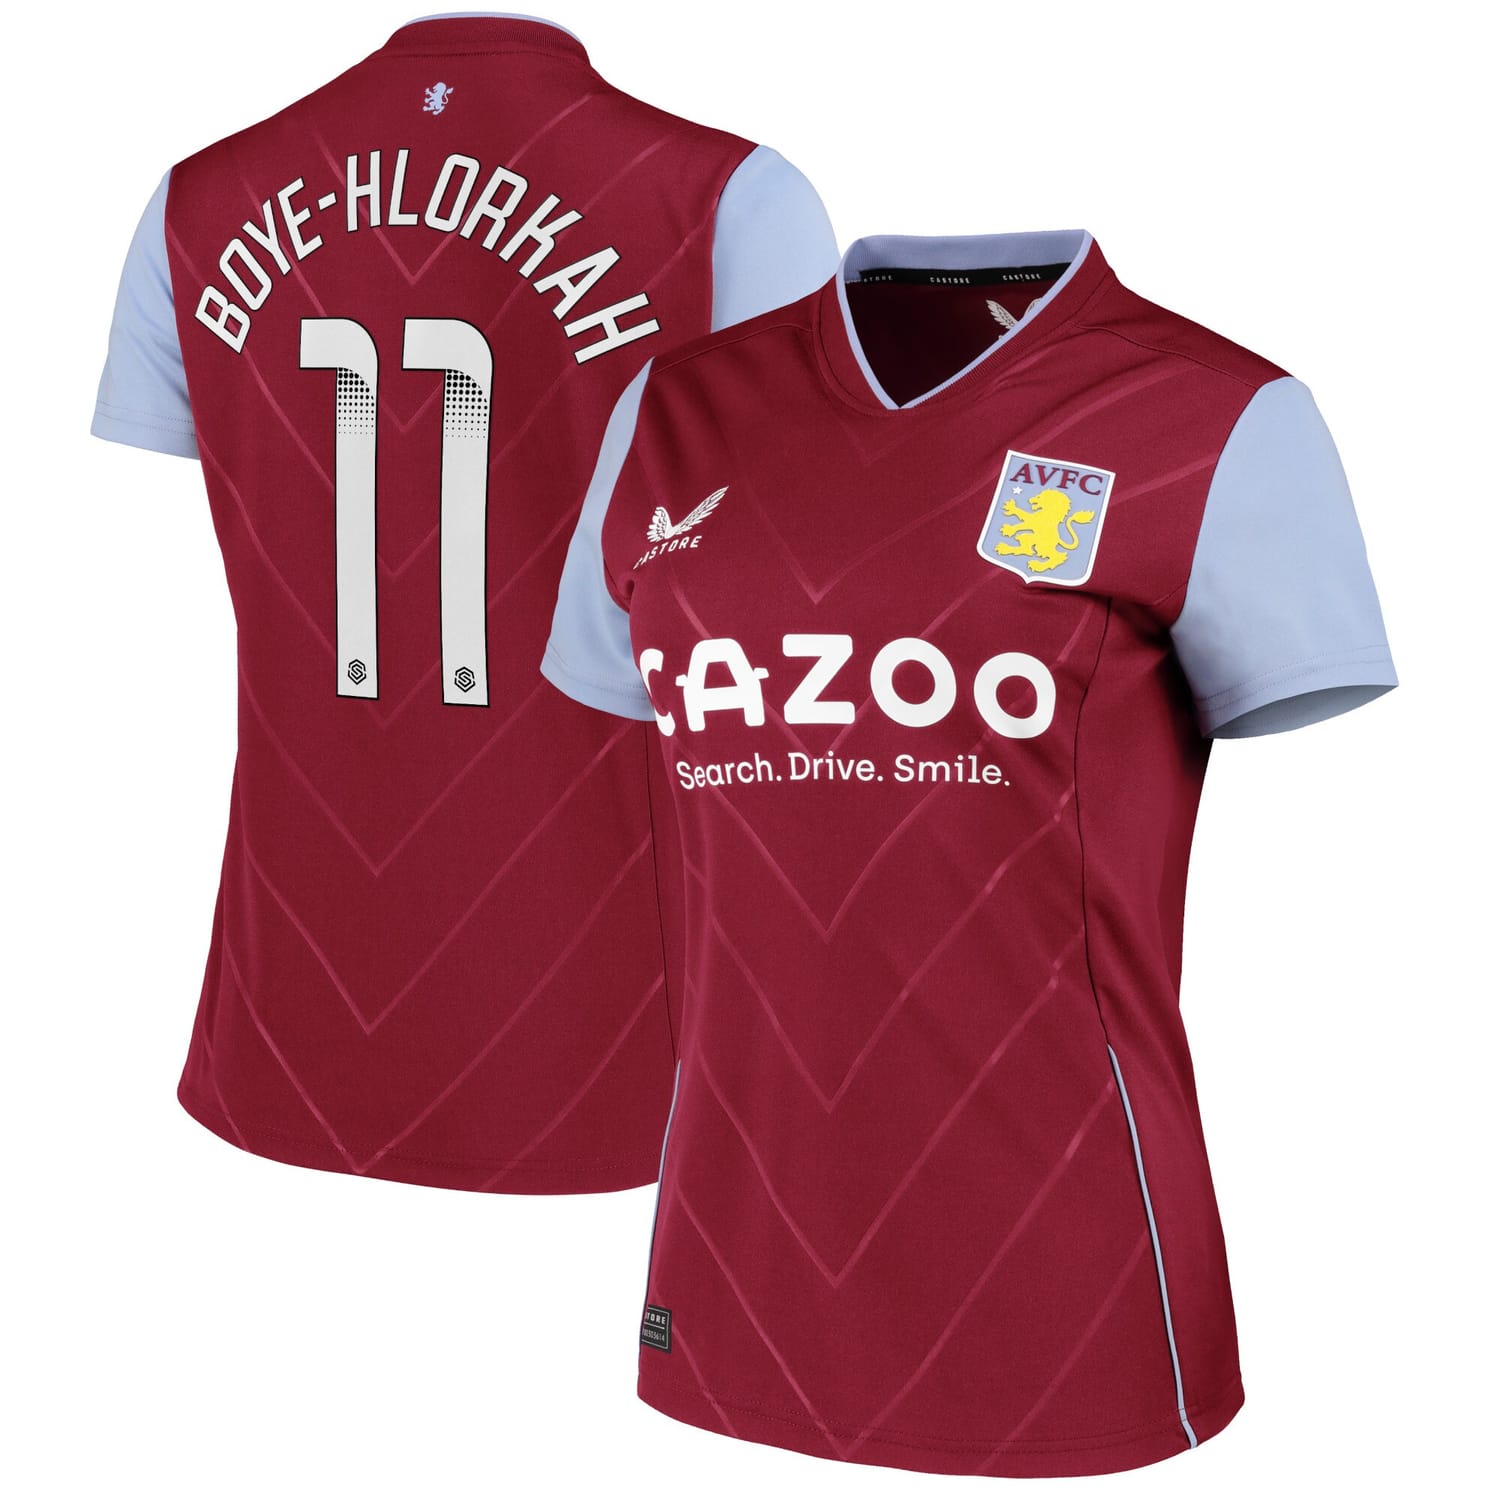 Premier League Aston Villa Home WSL Jersey Shirt 2022-23 player Chantelle Boye-Hlorkah 11 printing for Women